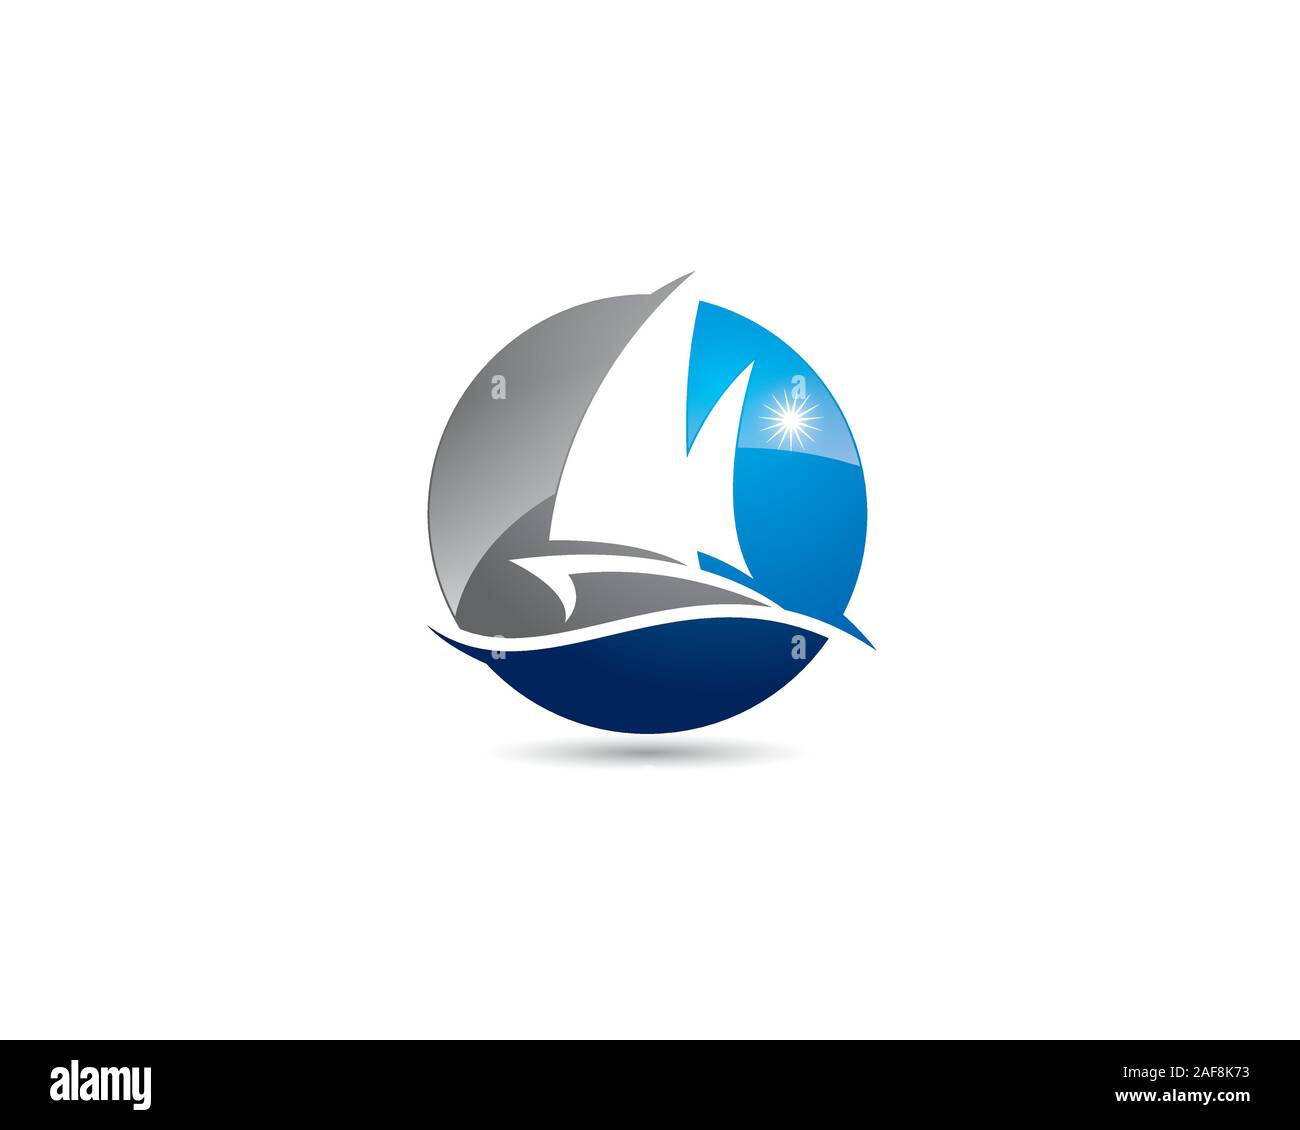 Sphärische boot Yacht in negativen Raum logo mit Sonne im Sommer Ocean Wave Stock Vektor